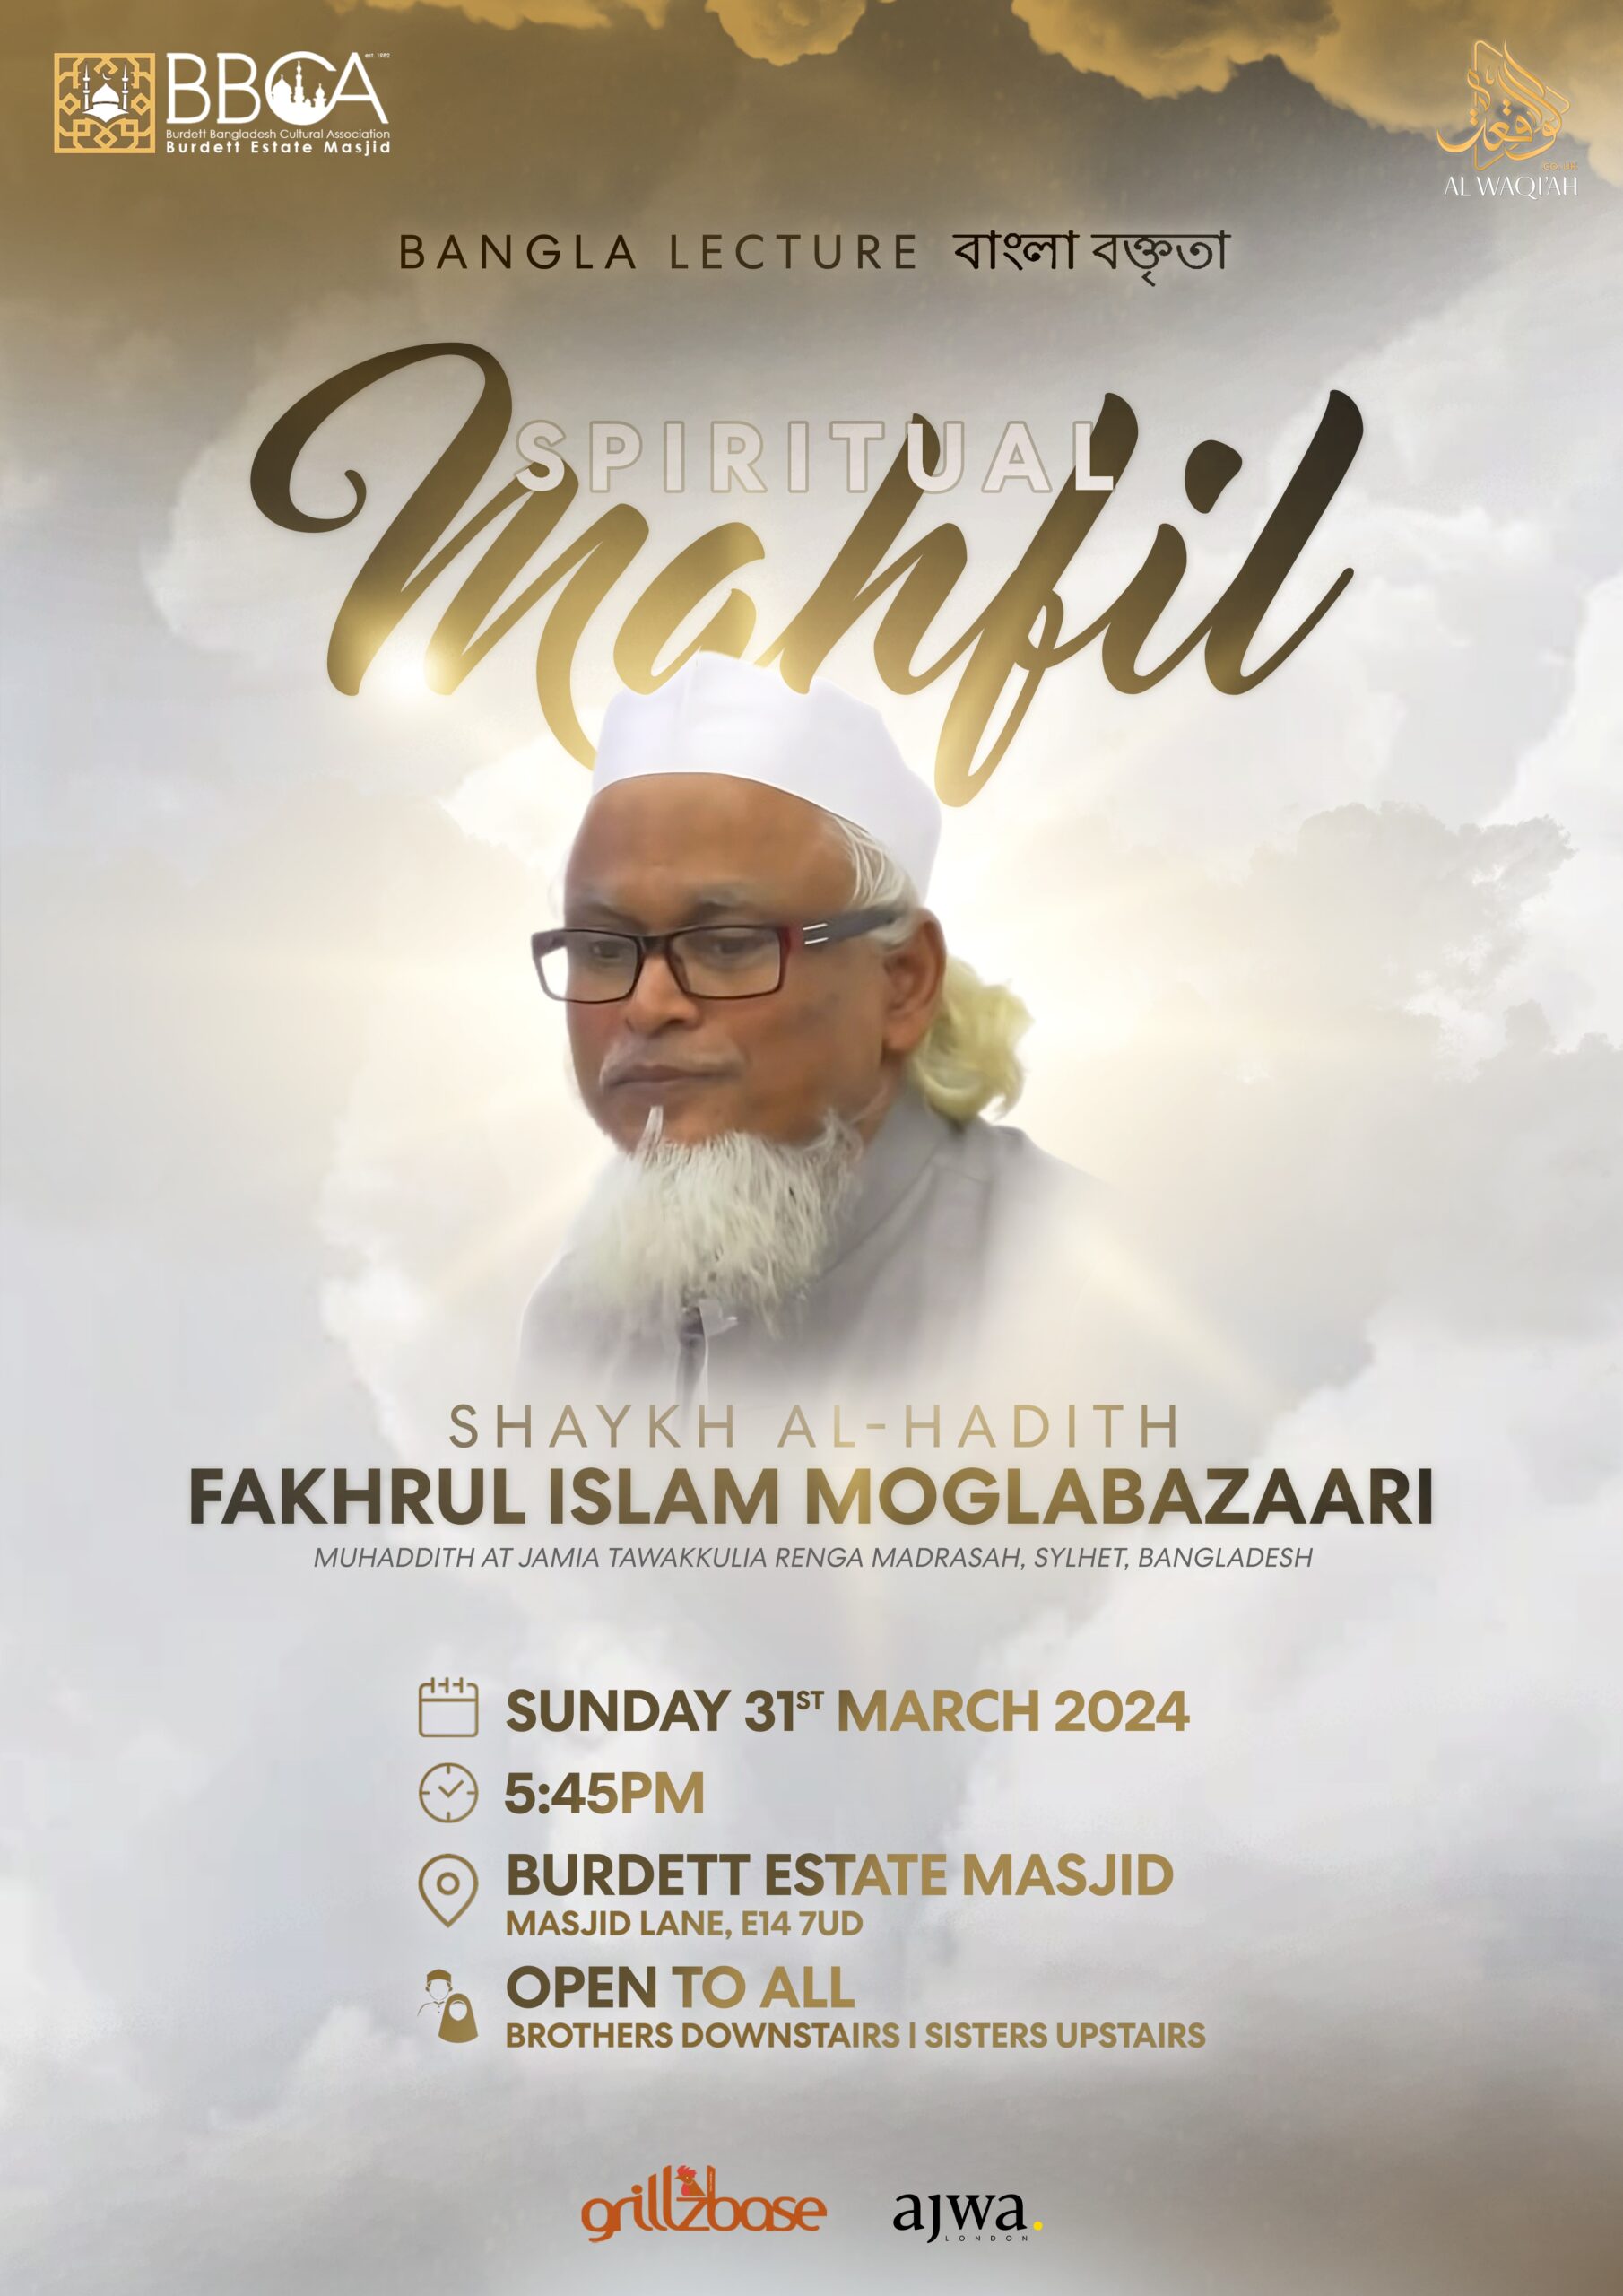 SPIRITUAL MAHFIL | Shaykh al-Hadith Fakhrul Islam Moglabazaari